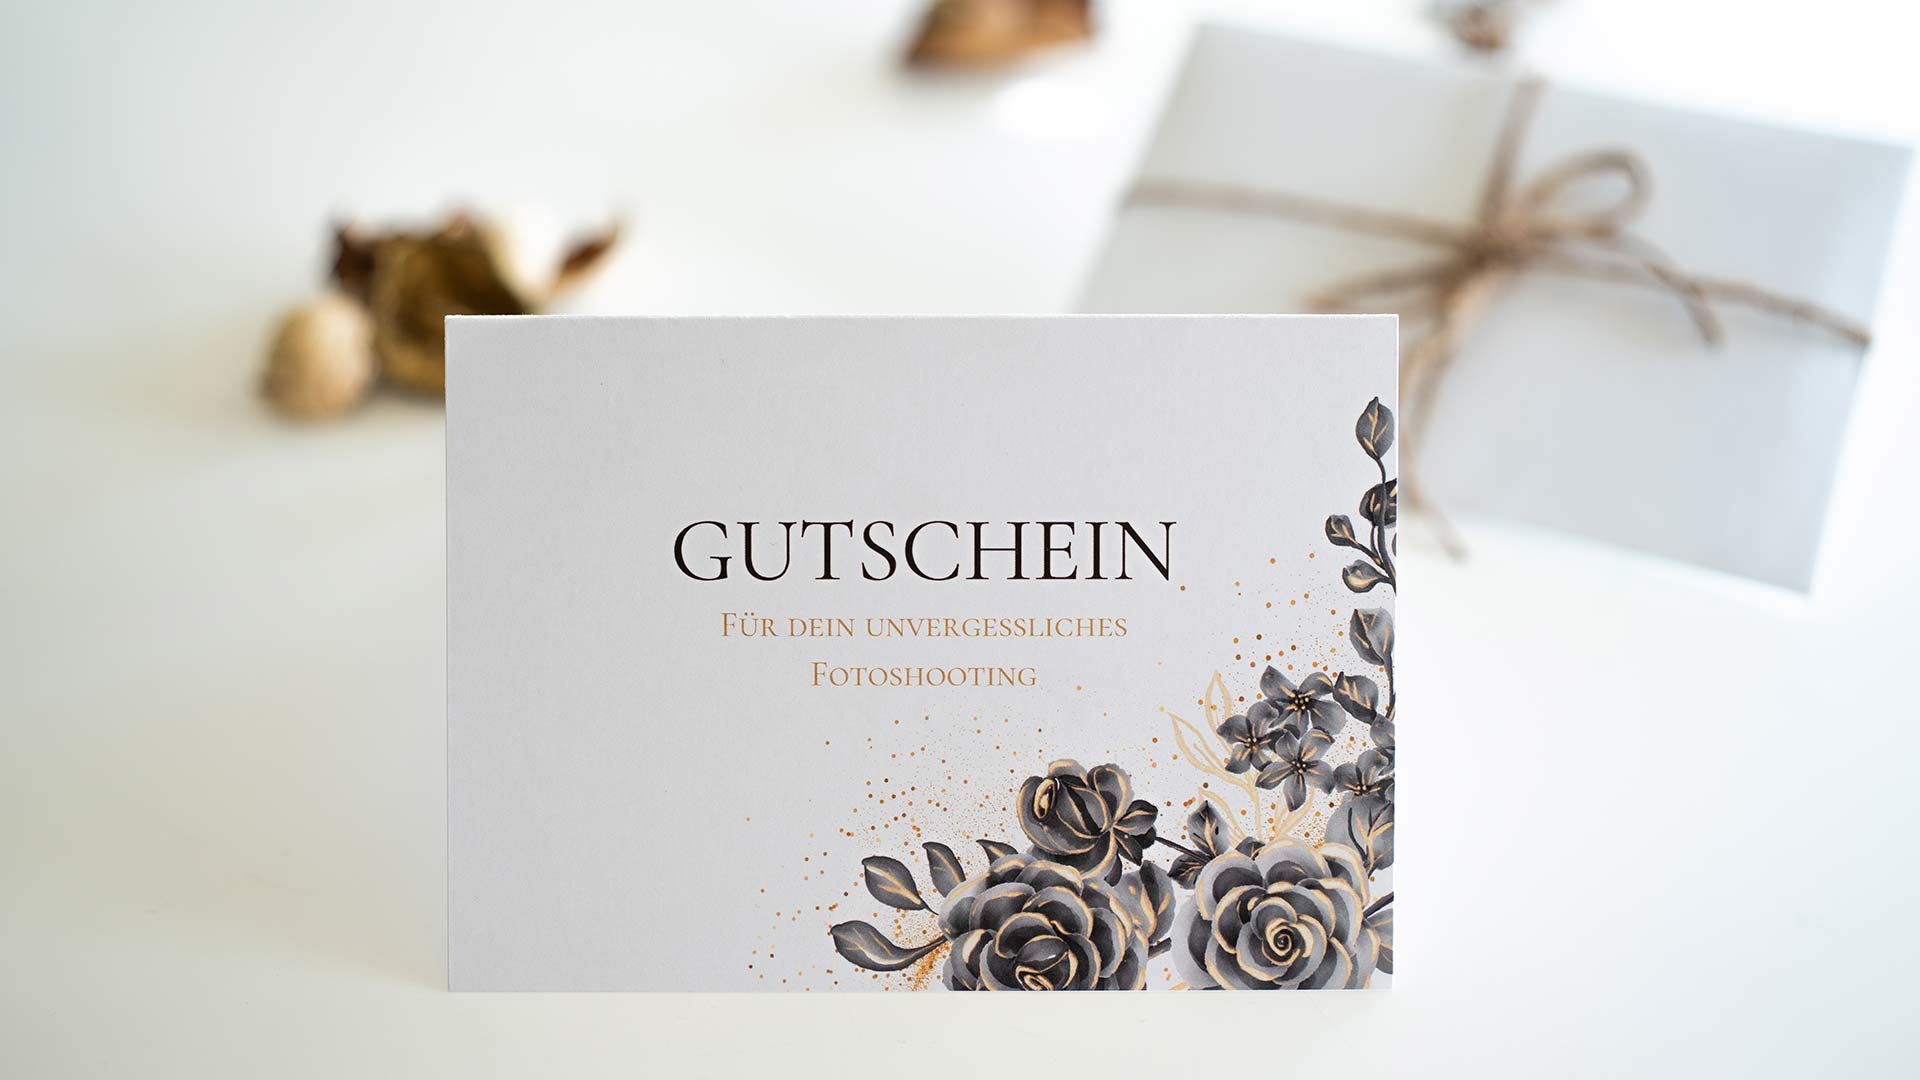 Aussenansicht-des-Geschenkgutscheins-von-Melanie-Schmidt-Fotografie-mit-Umschlag-im-Hintergrund